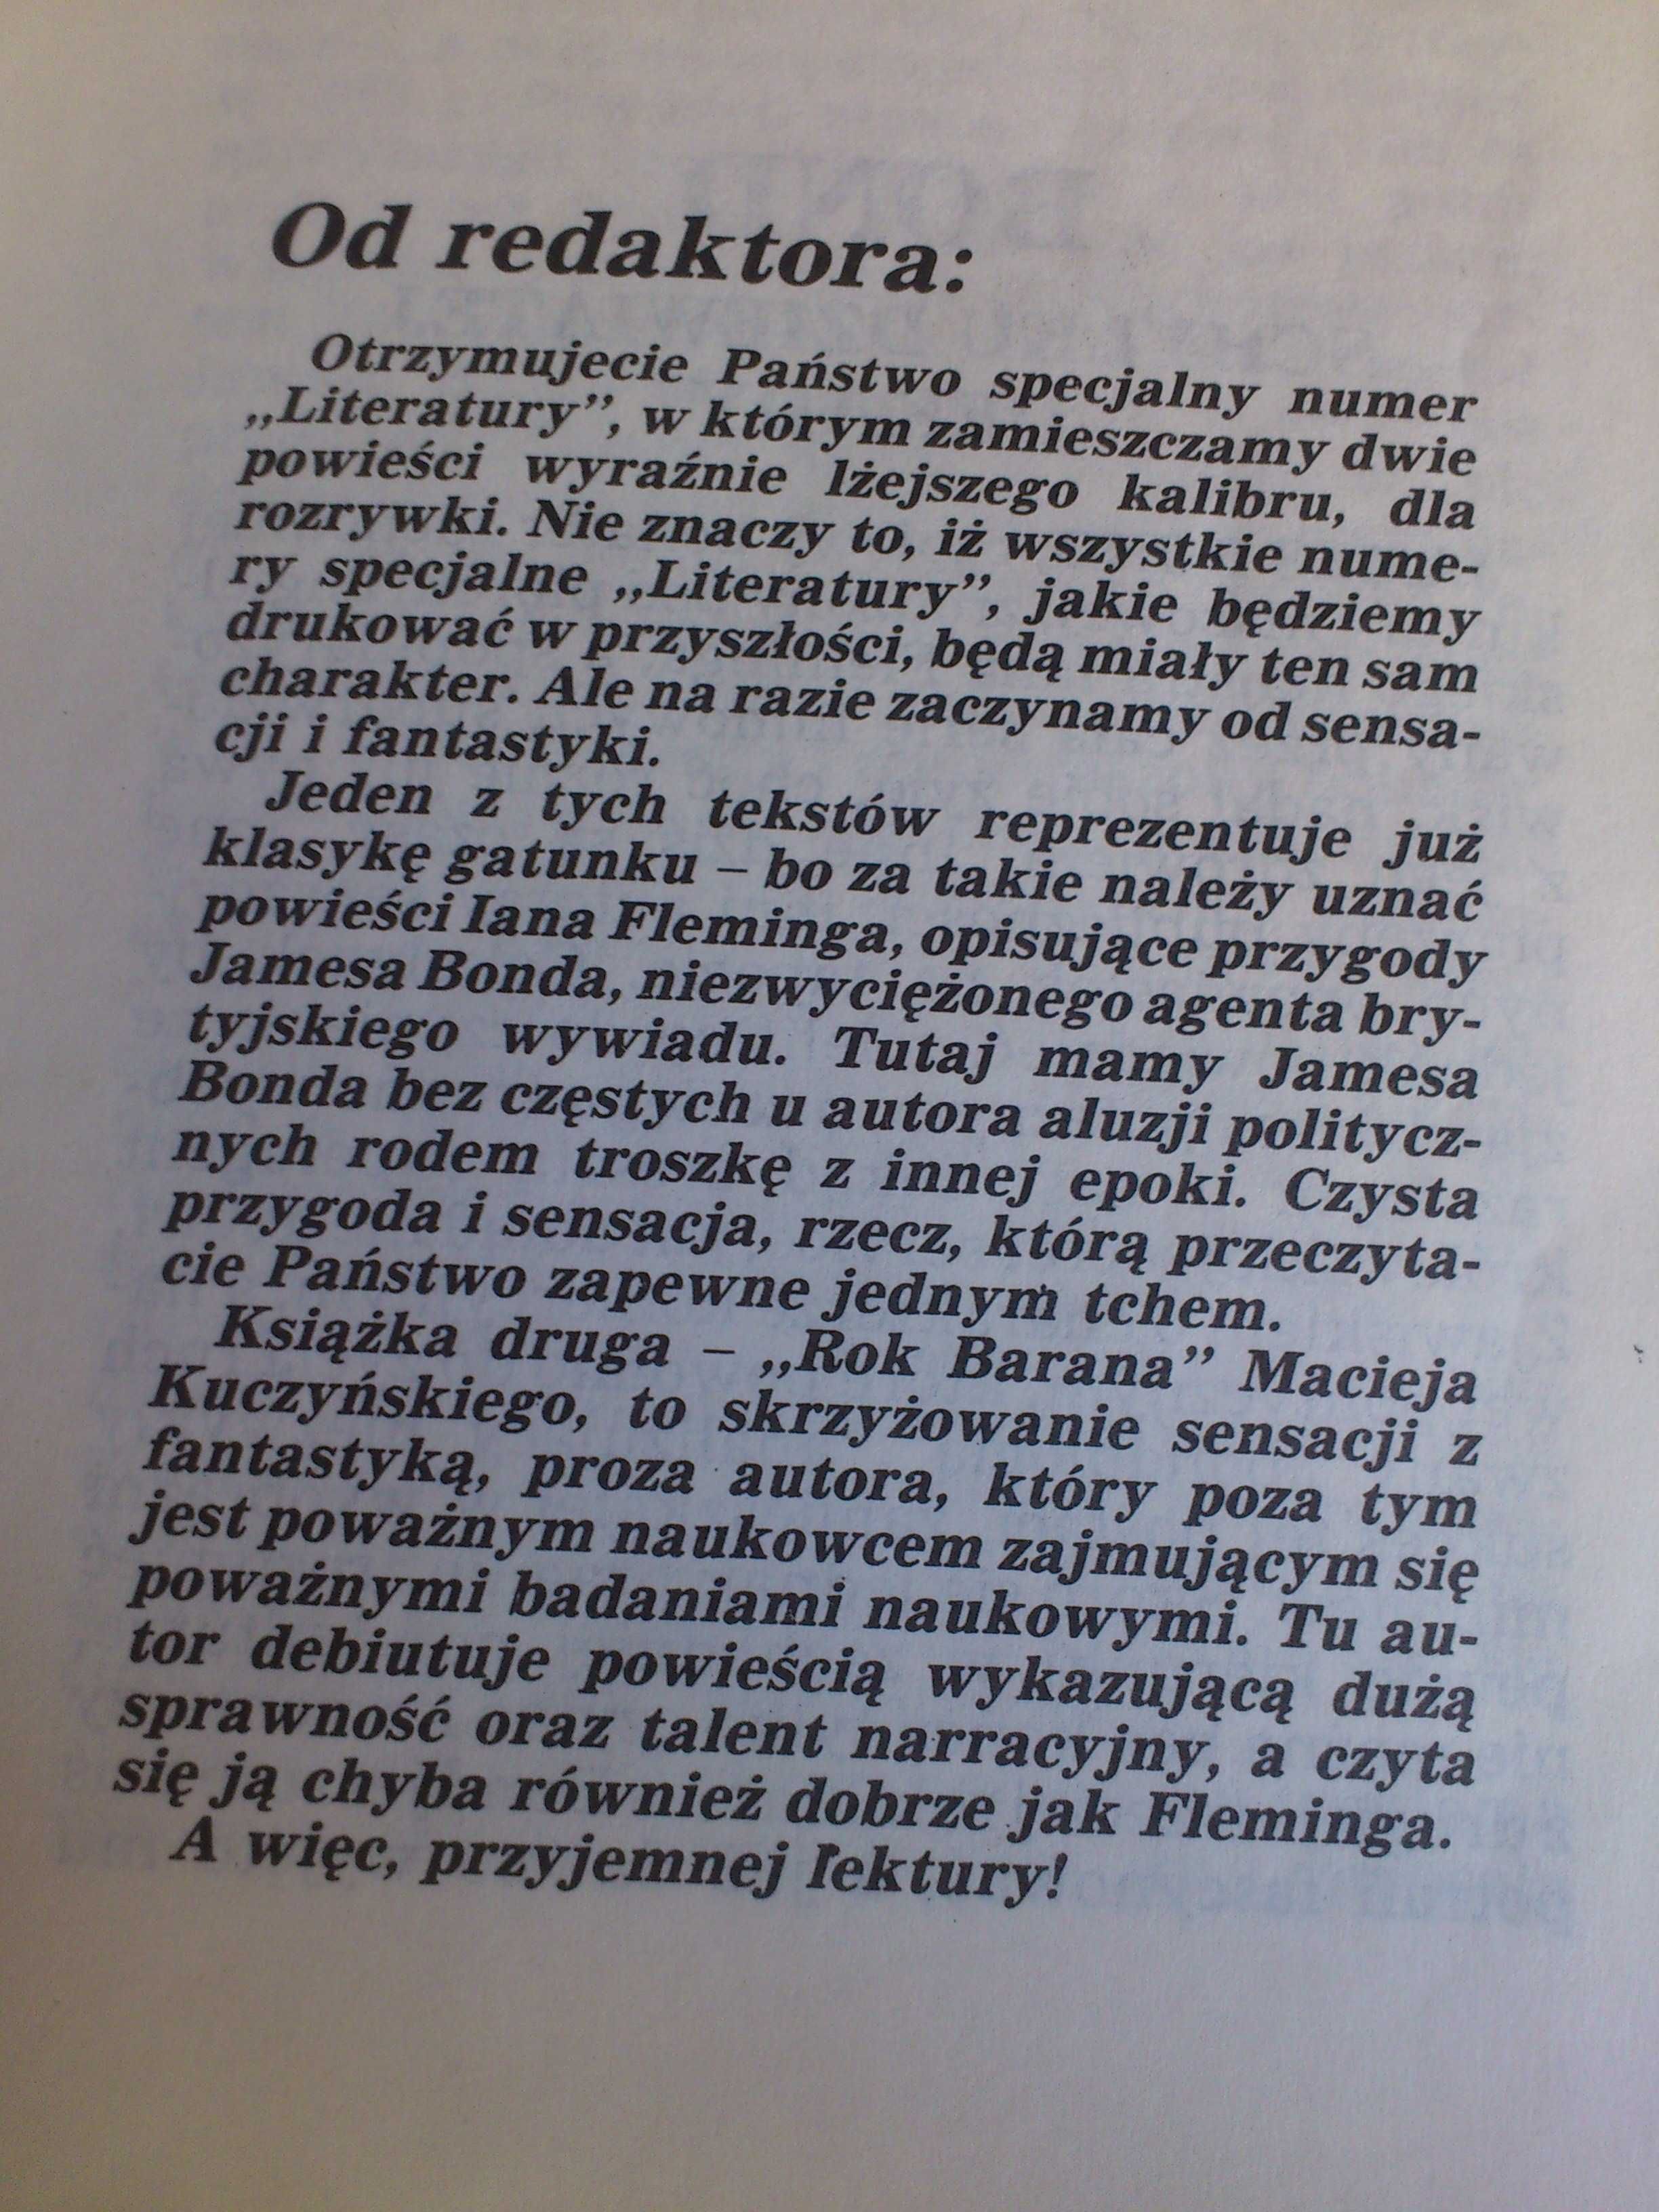 Literatura '88 Miesięcznik Literacko - Społeczny Nr Specjalny PRL